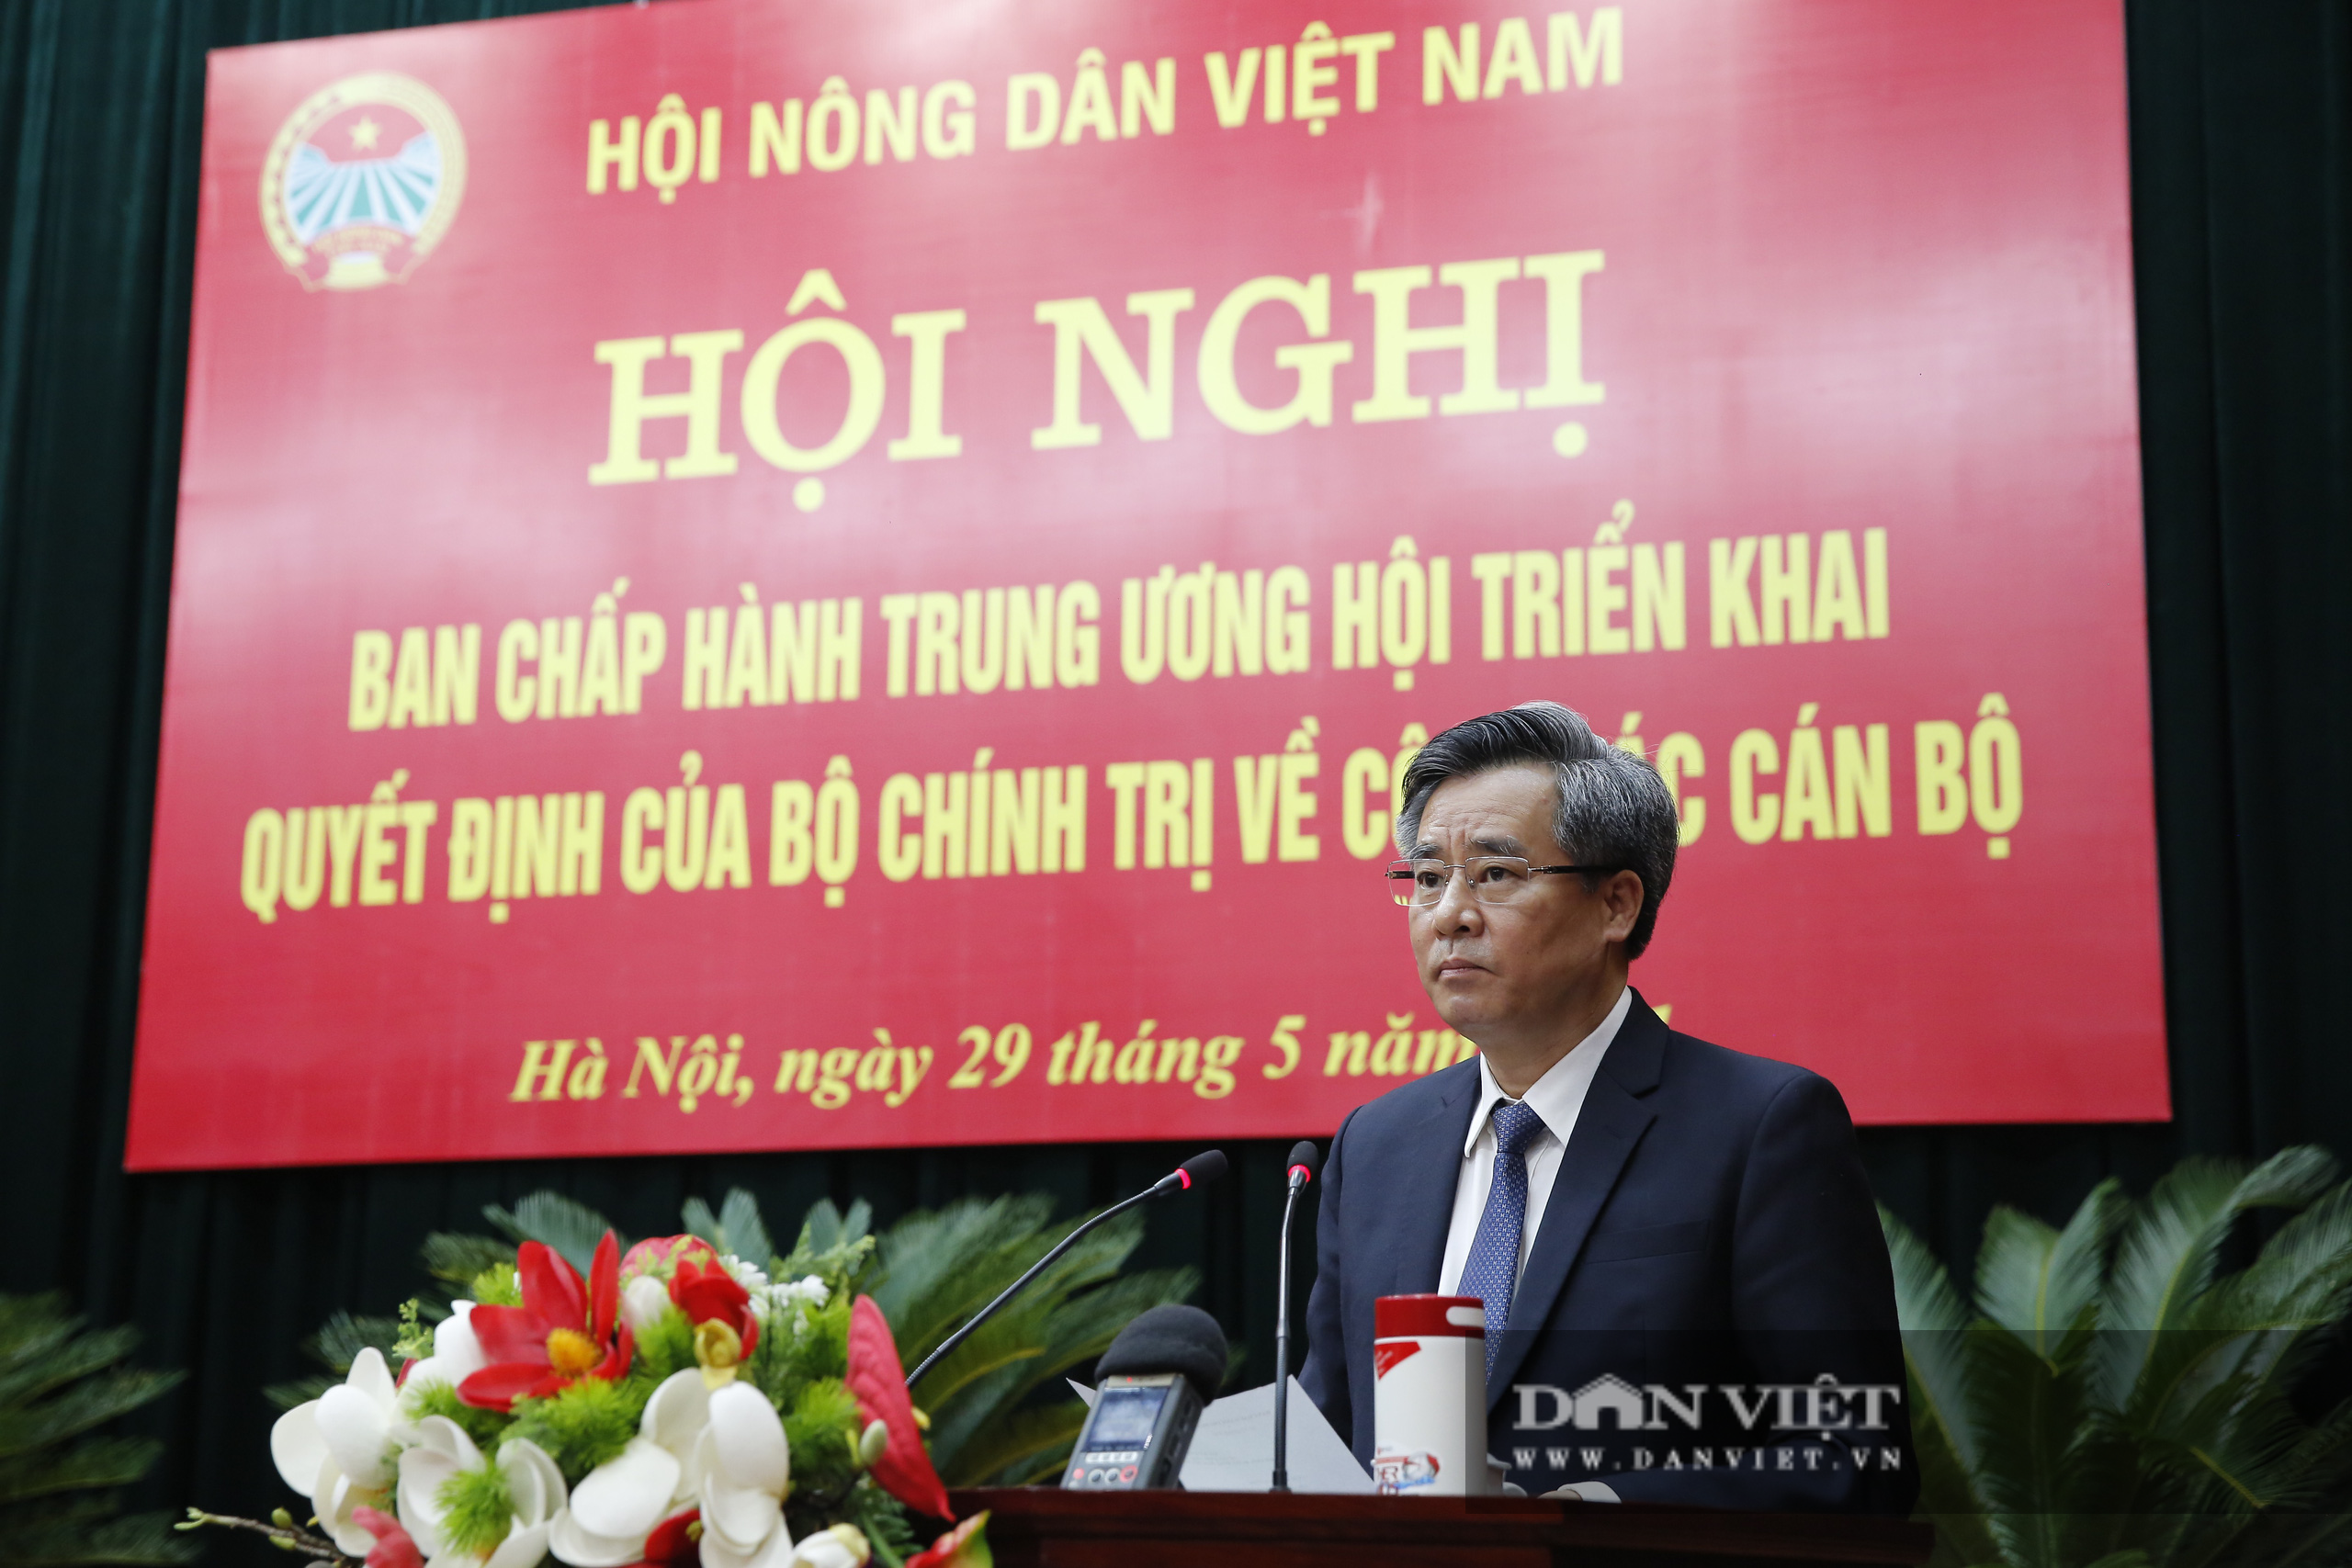 Ảnh: Hội nghị BCH TƯ Hội Nông dân Việt Nam triển khai quyết định của Bộ Chính trị về công tác cán bộ - Ảnh 3.